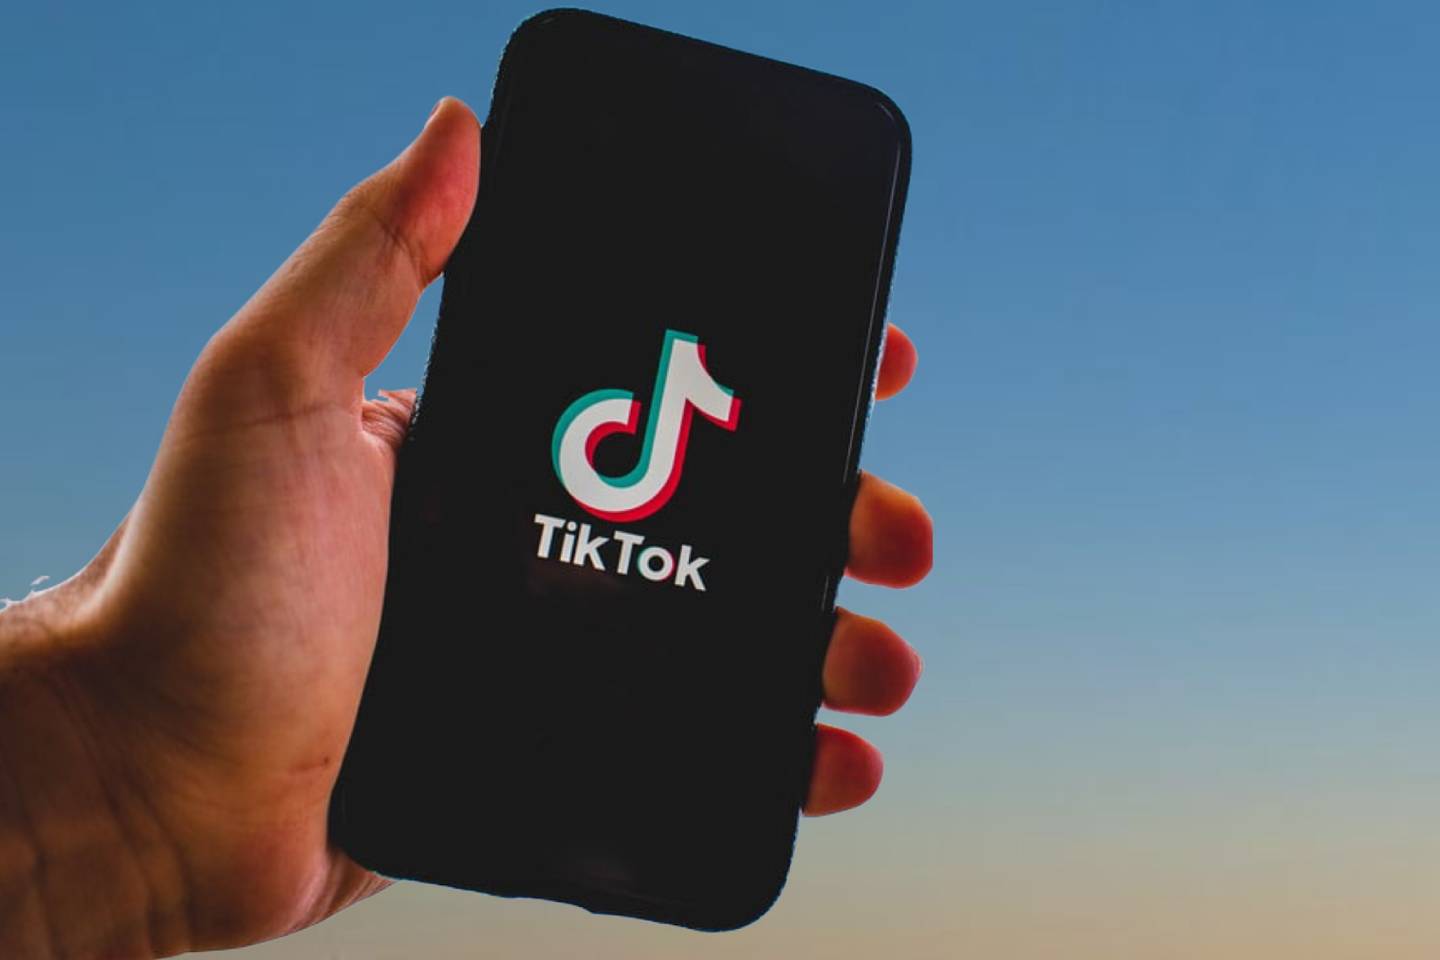 Новости Казахстана / Общество в Казахстане / В двух крупных городах Казахстана появится TikTok представительство